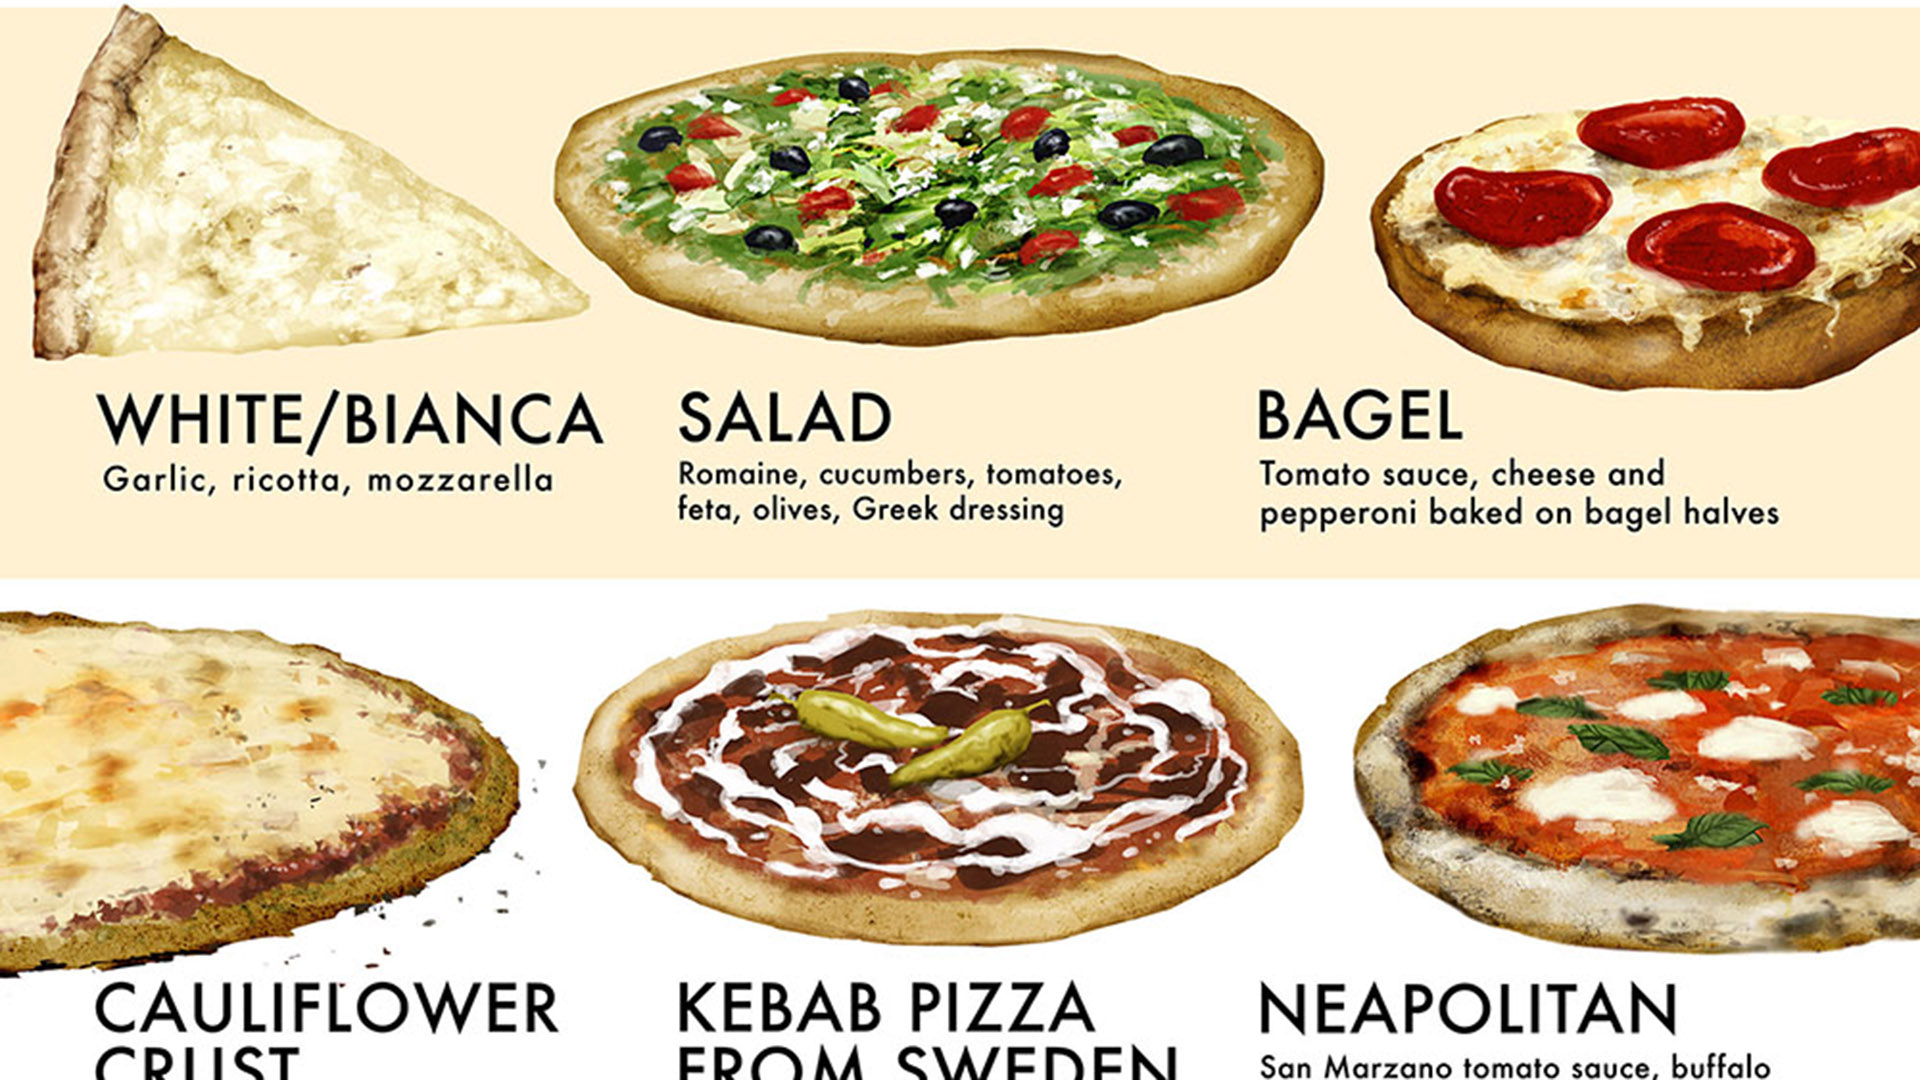 состав пиццы пепперони на английском фото 2